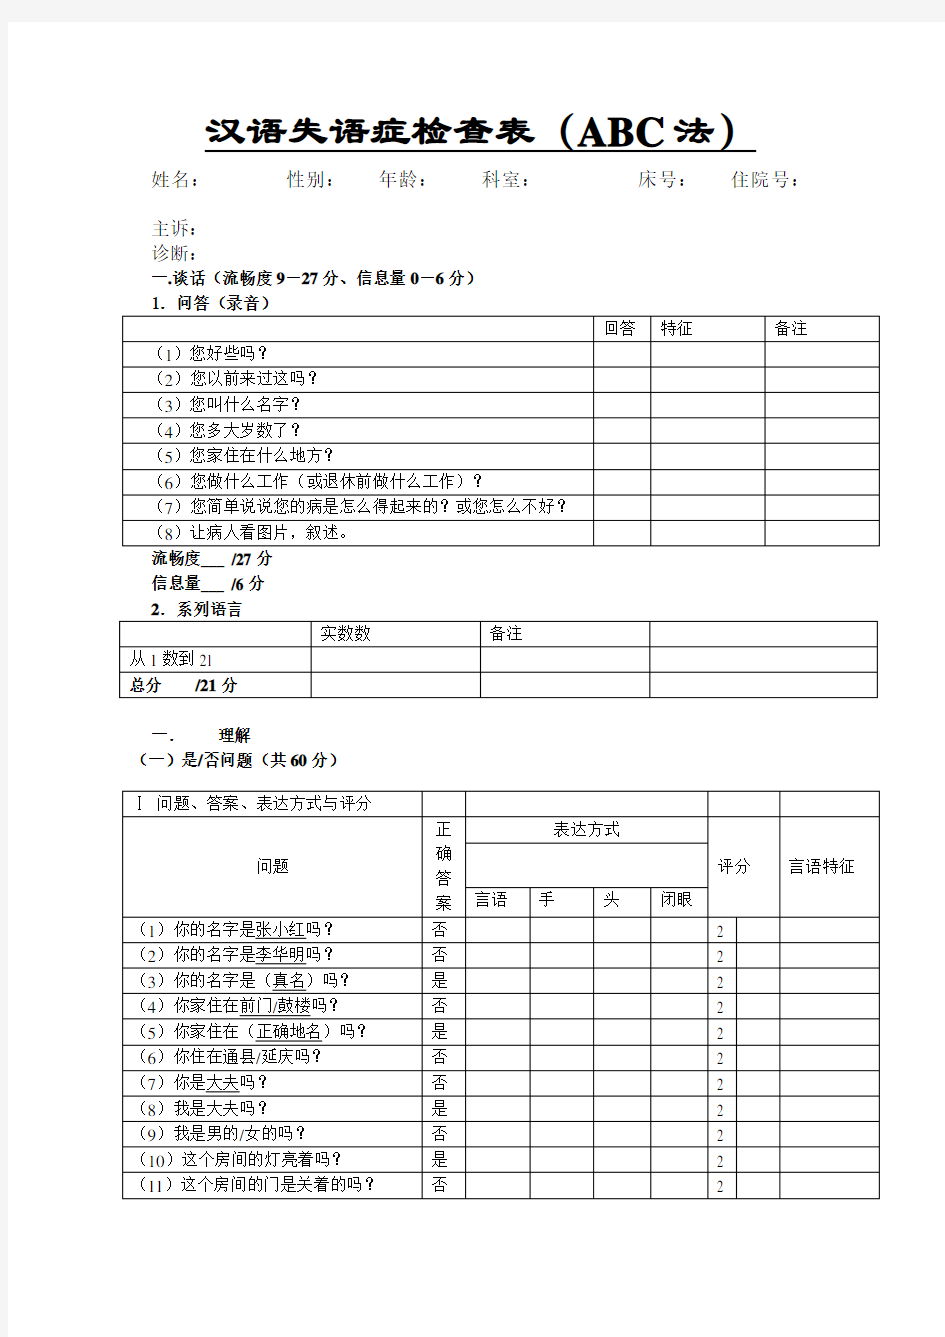 汉语失语症检查表ABC法